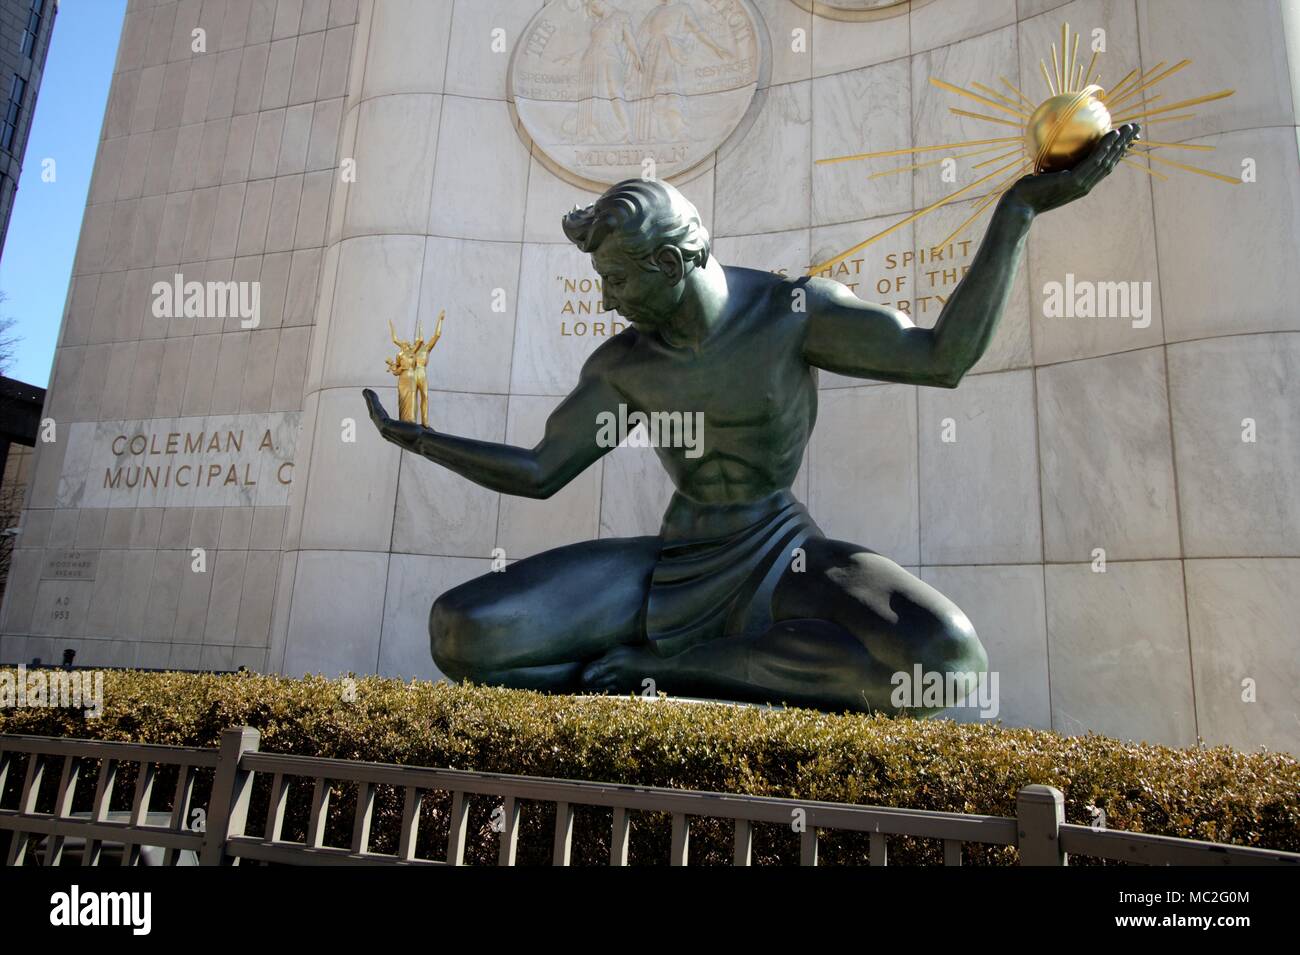 Detroit, Michigan, EE.UU., 22 de marzo de 2018: El espíritu de Detroit por Coleman un joven Centro Municipal. La estatua de bronce fue encargado por la ciudad Foto de stock